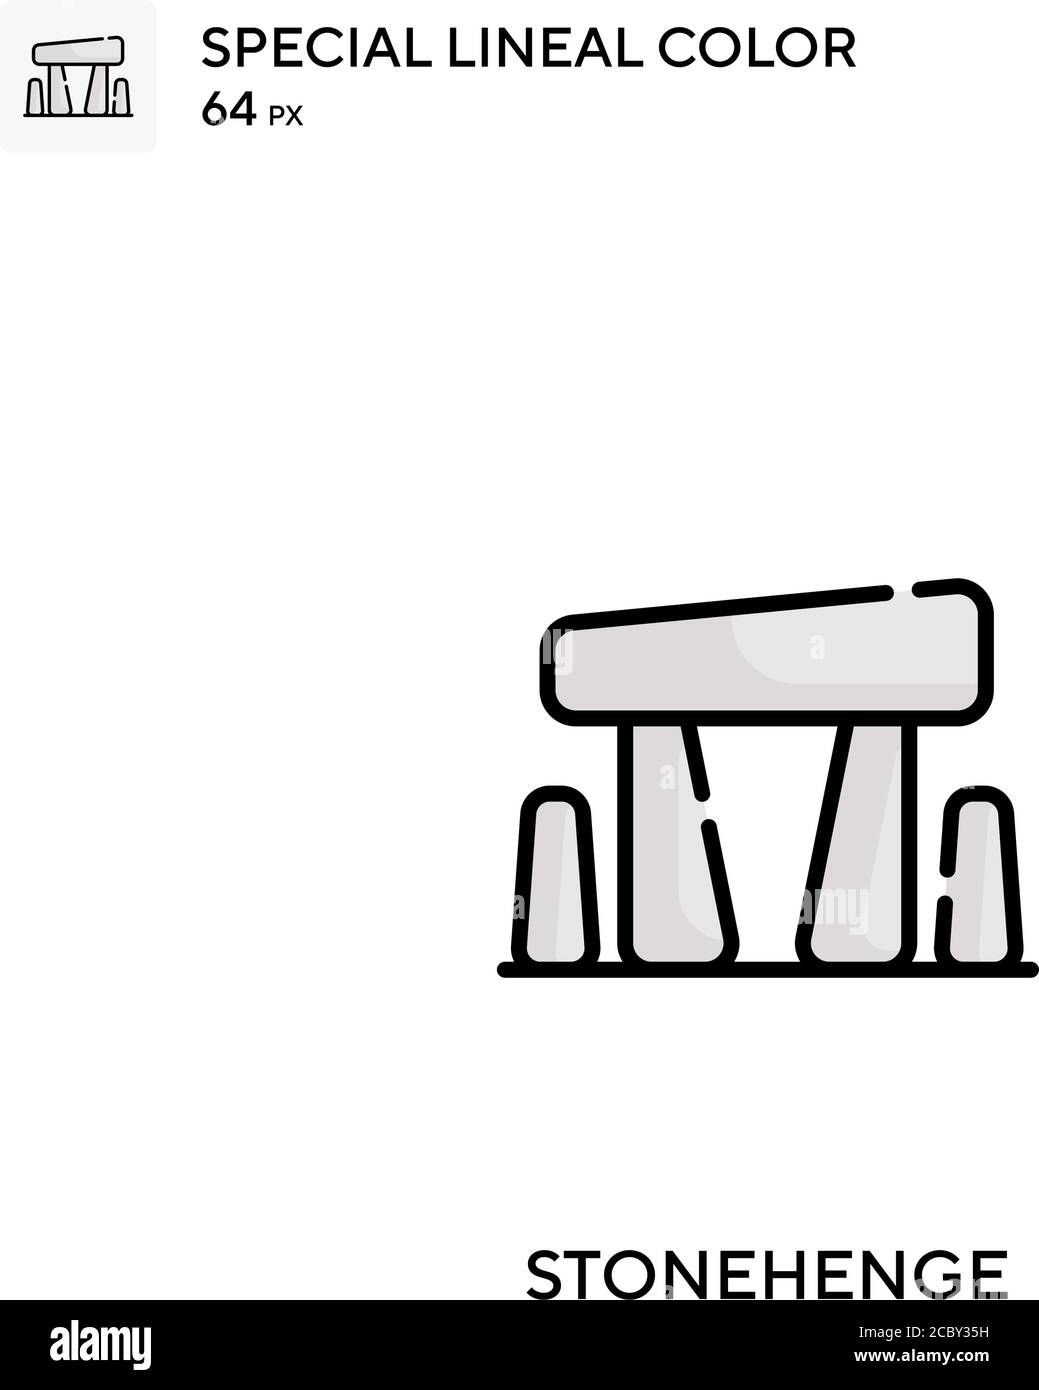 Stonehenge icono de vector de color lineal especial. Iconos de Stonehenge para su proyecto de negocio Ilustración del Vector